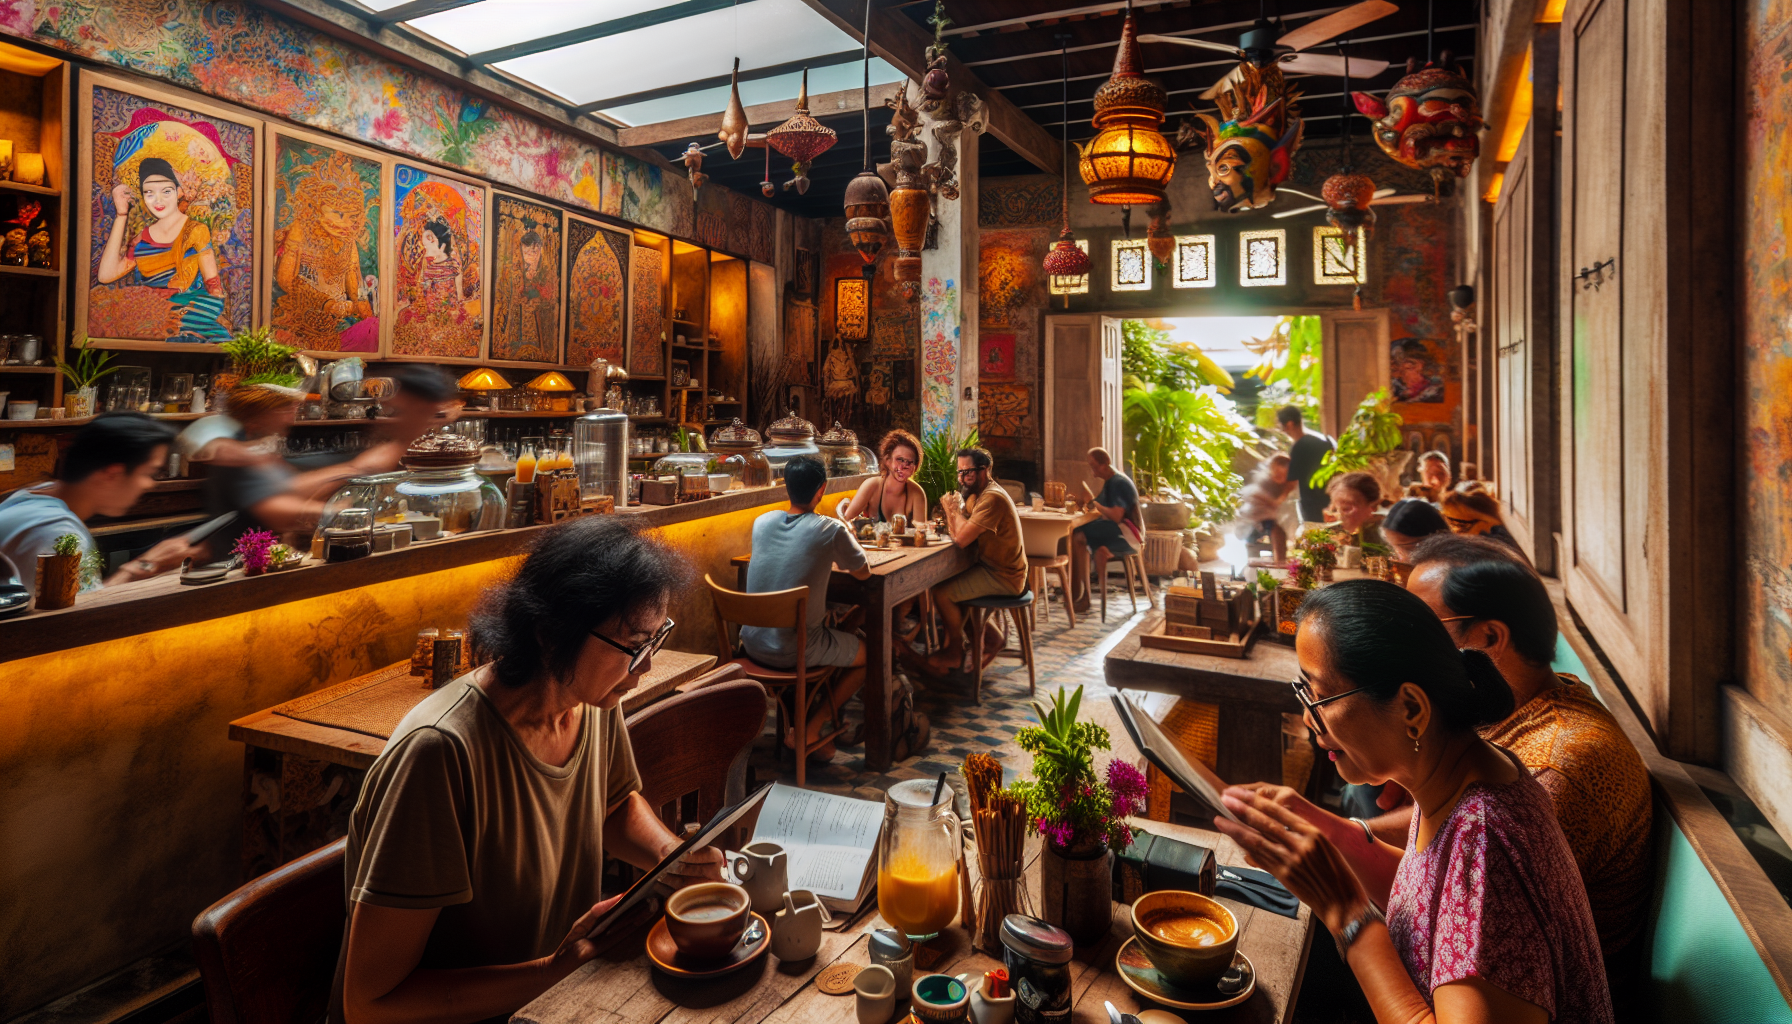 Trendy cafe scene in Bali